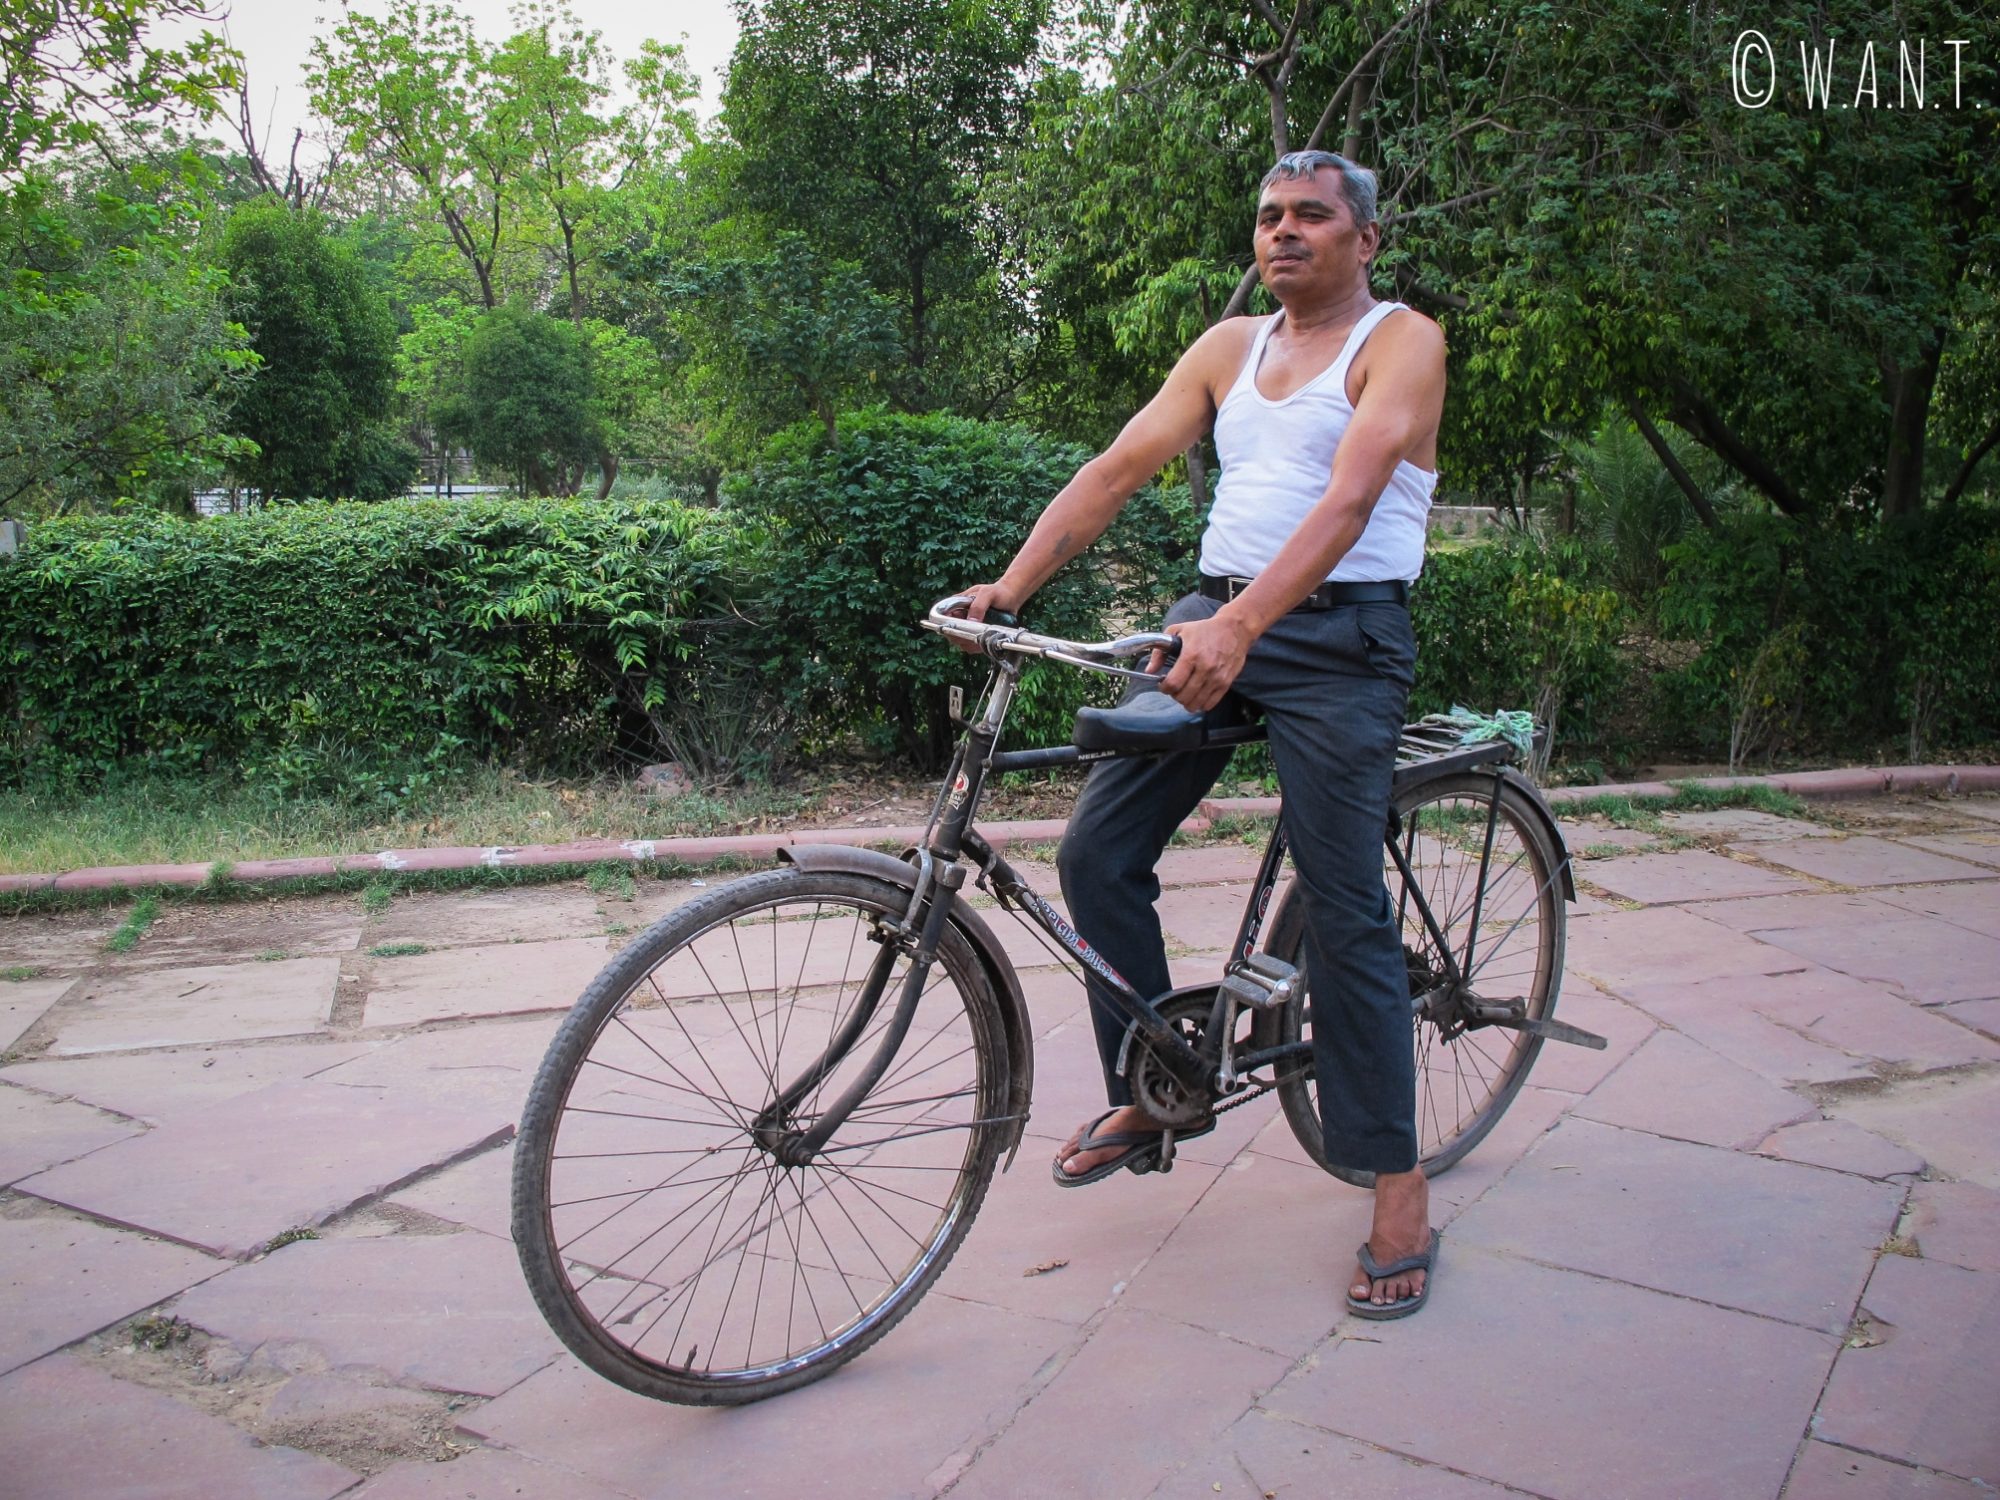 Le fameux monsieur qui est venu nous proposer des substances illicites dans le parc Shahjahan d'Agra